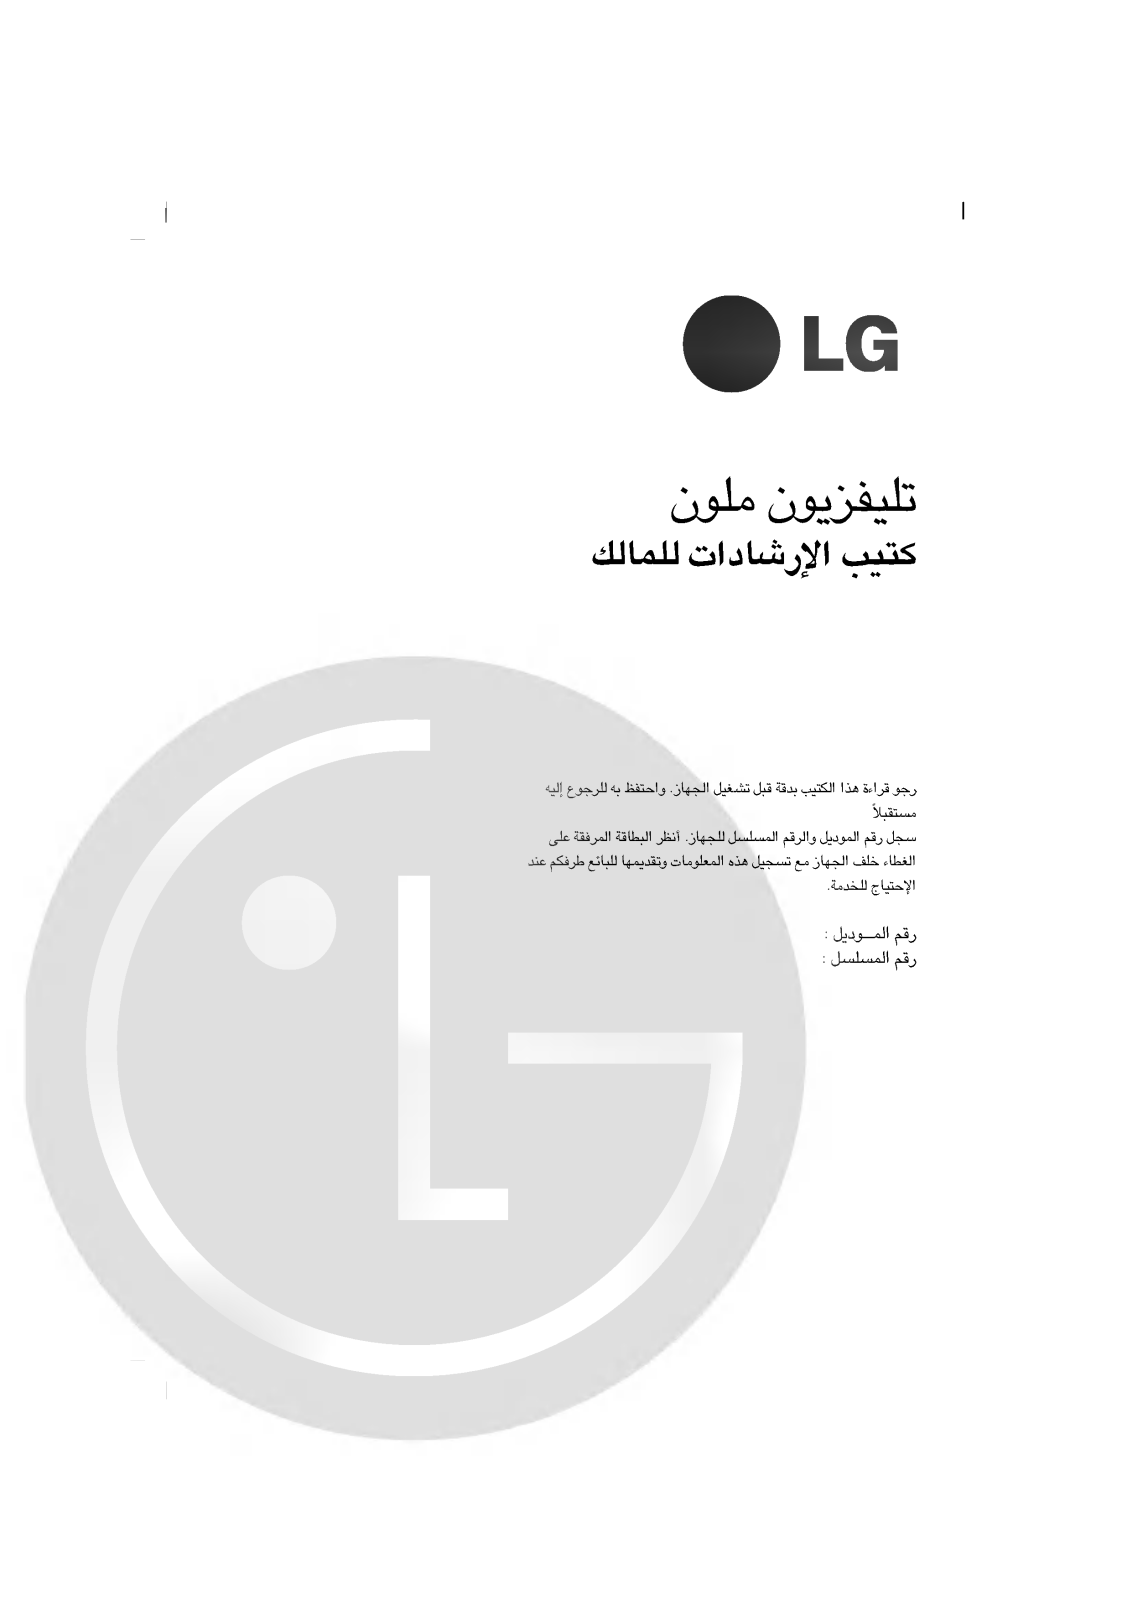 LG RT-21CA25R Owner’s Manual